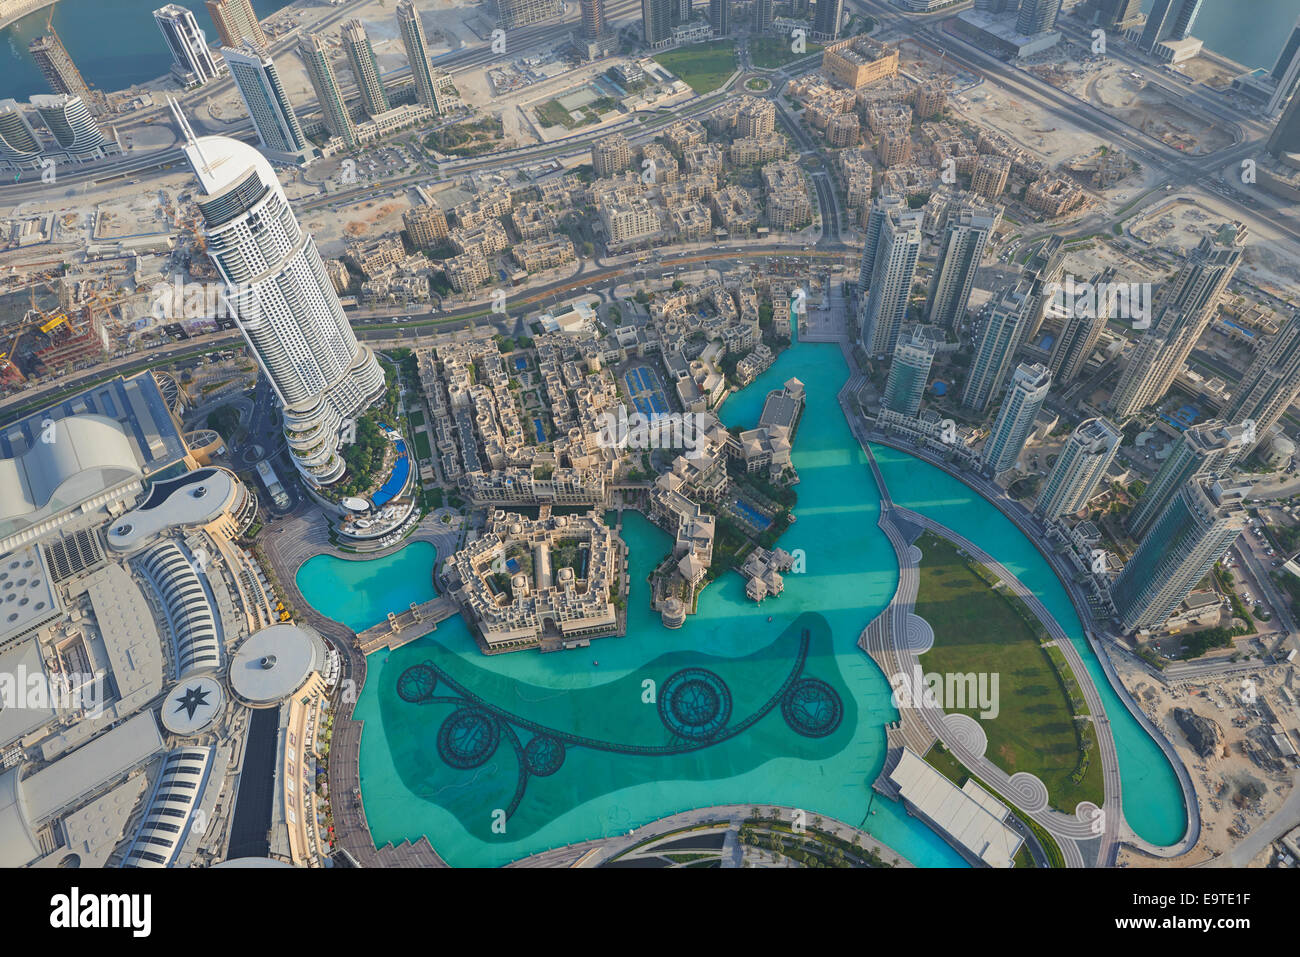 Vue sur Dubai à partir de la plate-forme d'observation la plus haute du monde à 555 mètres de haut niveau sur les 148 de la Burj Khalifa Dubaï ÉMIRATS ARABES UNIS Banque D'Images